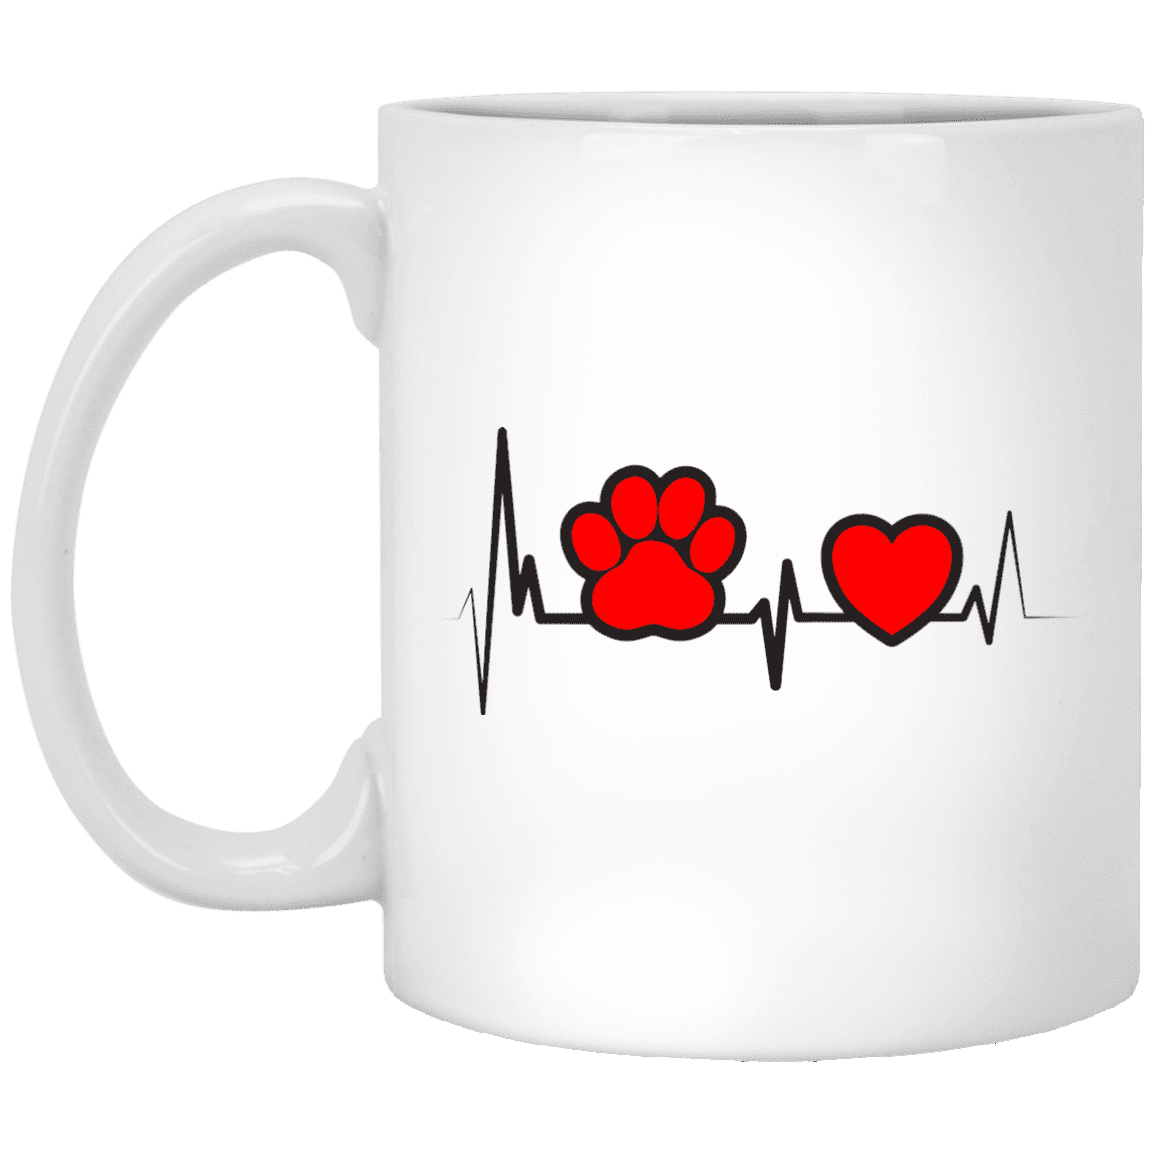 Dog Heartbeat - Mugs.